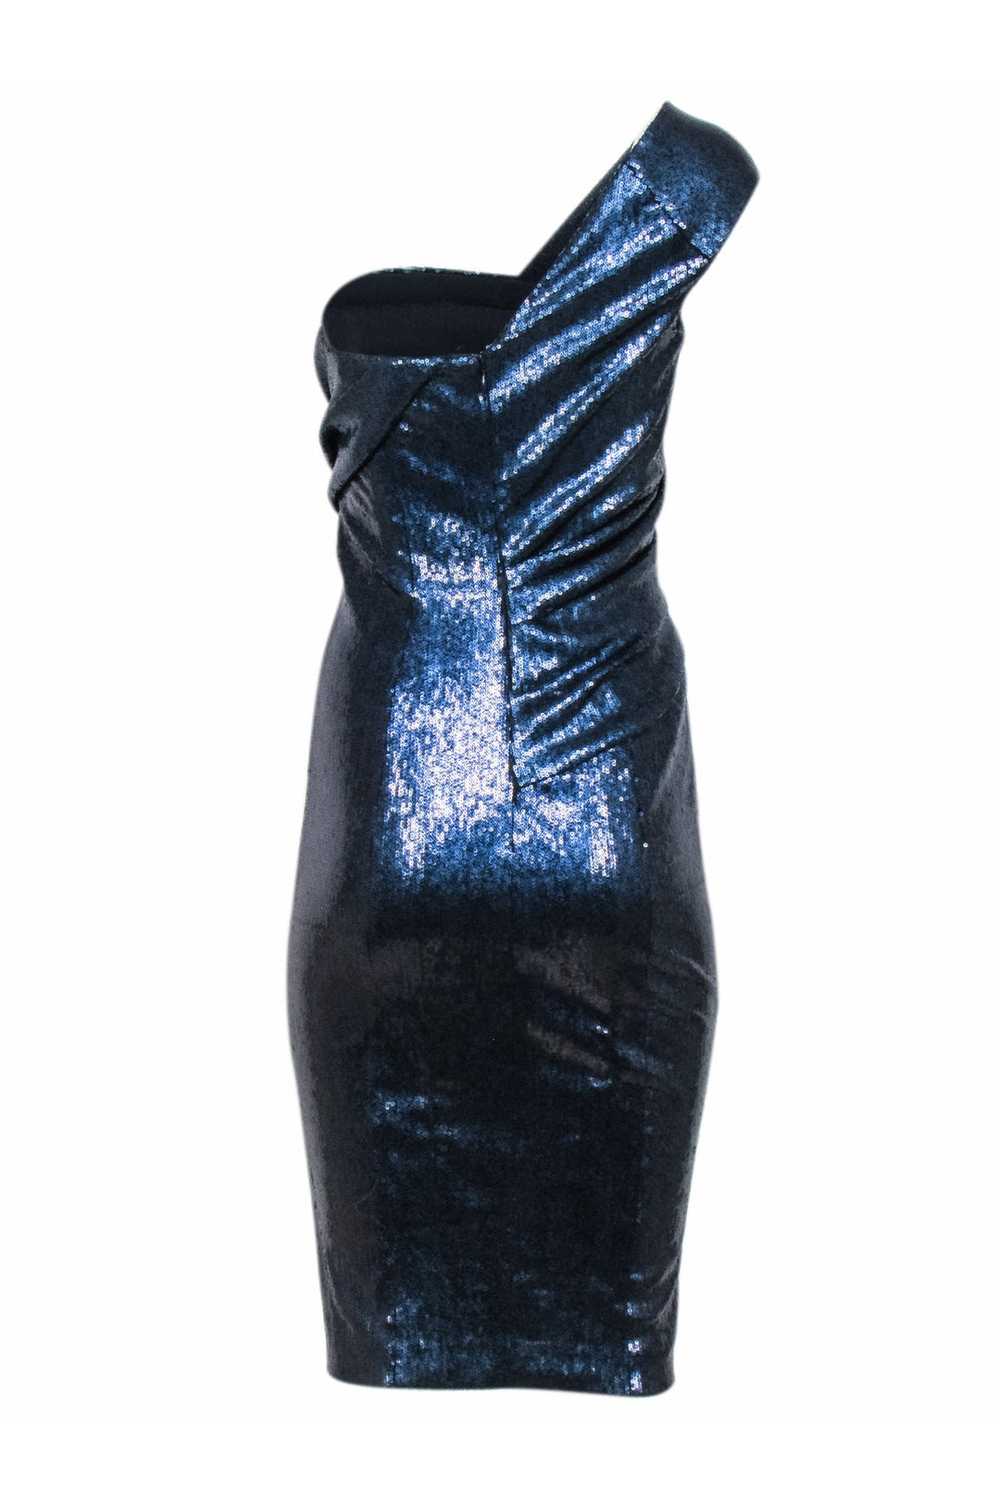 Donna Karan - Navy Sequins One Shoulder Dress Sz 6 - image 4